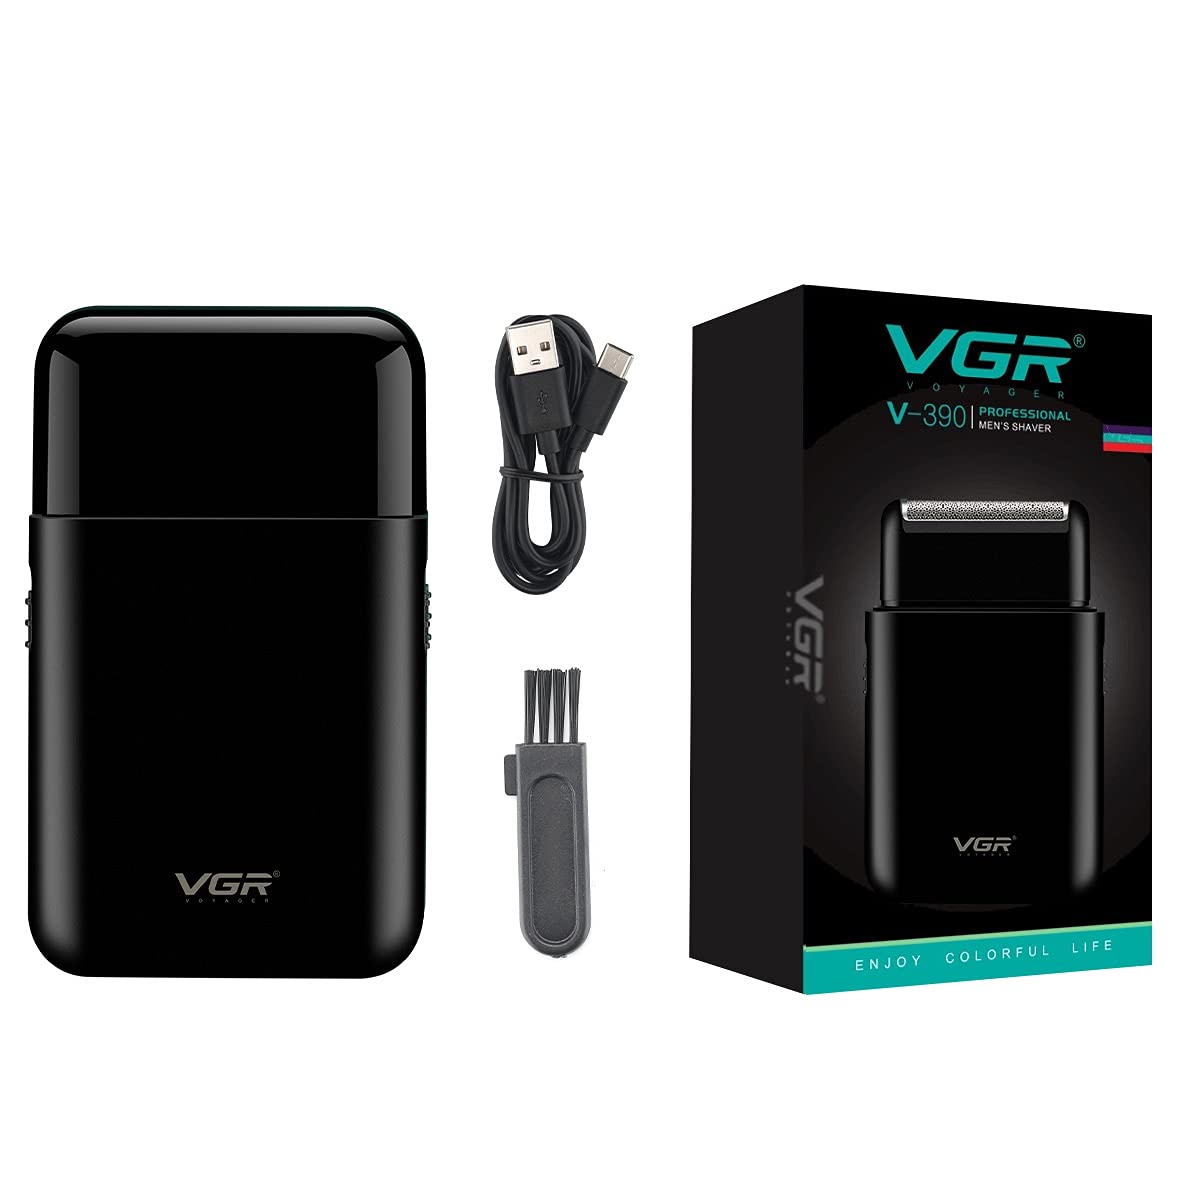 VGR Professional Rechargeable Electric Shaver, Black - V-390